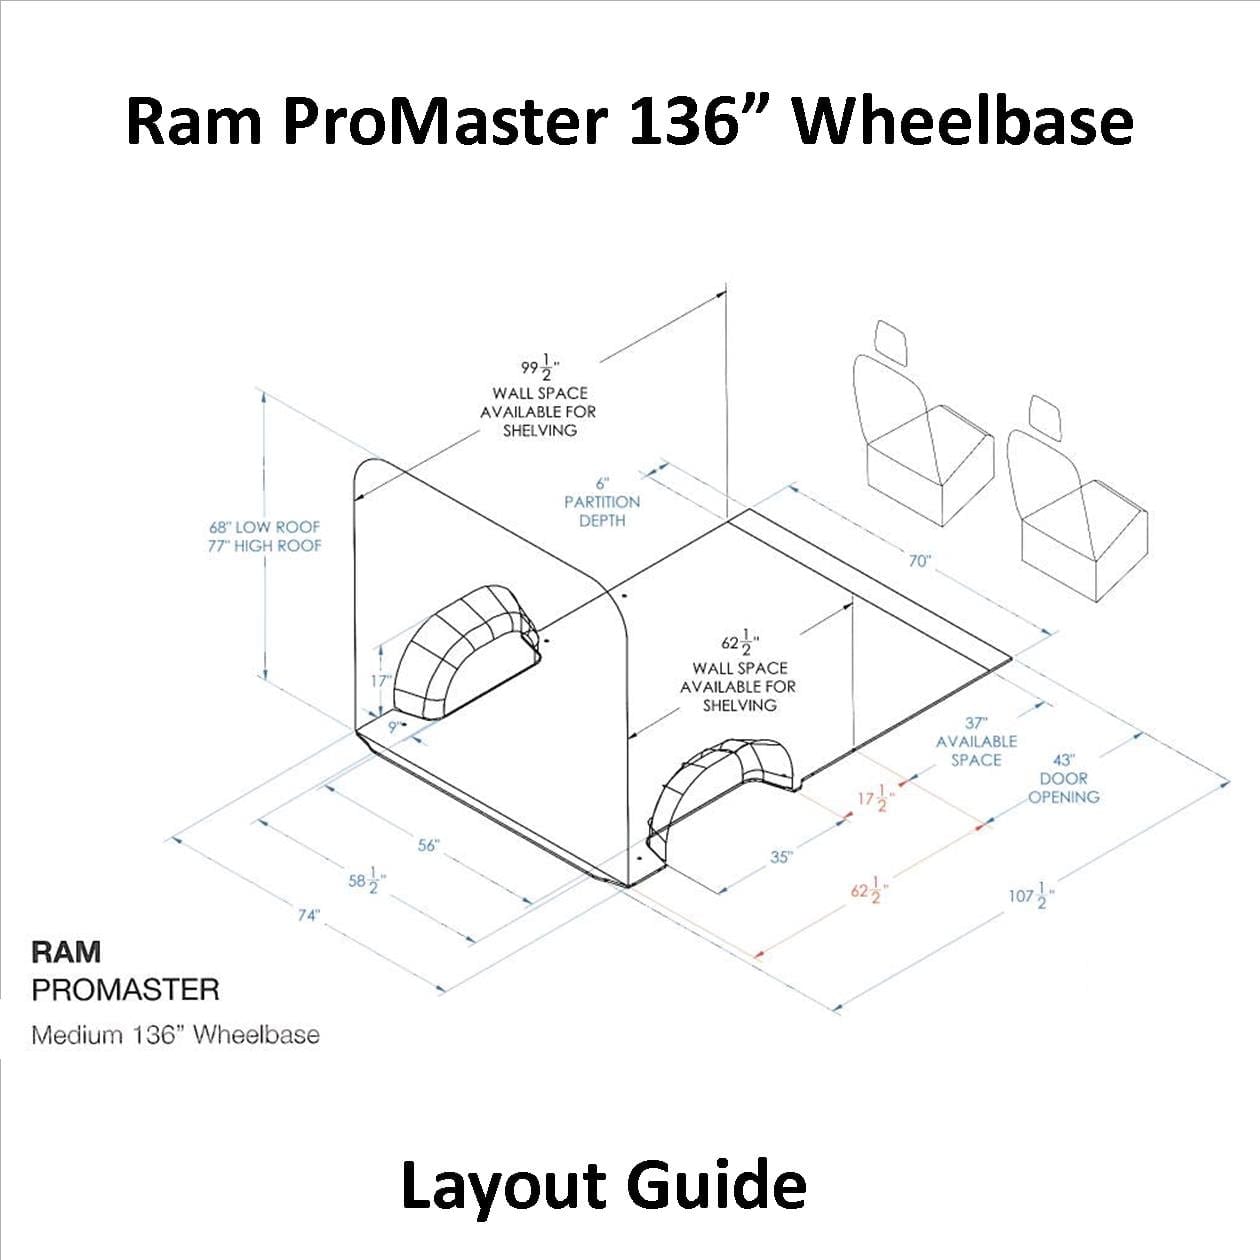 Ram Promaster Layout Guide 136 Wb U S Upfitters